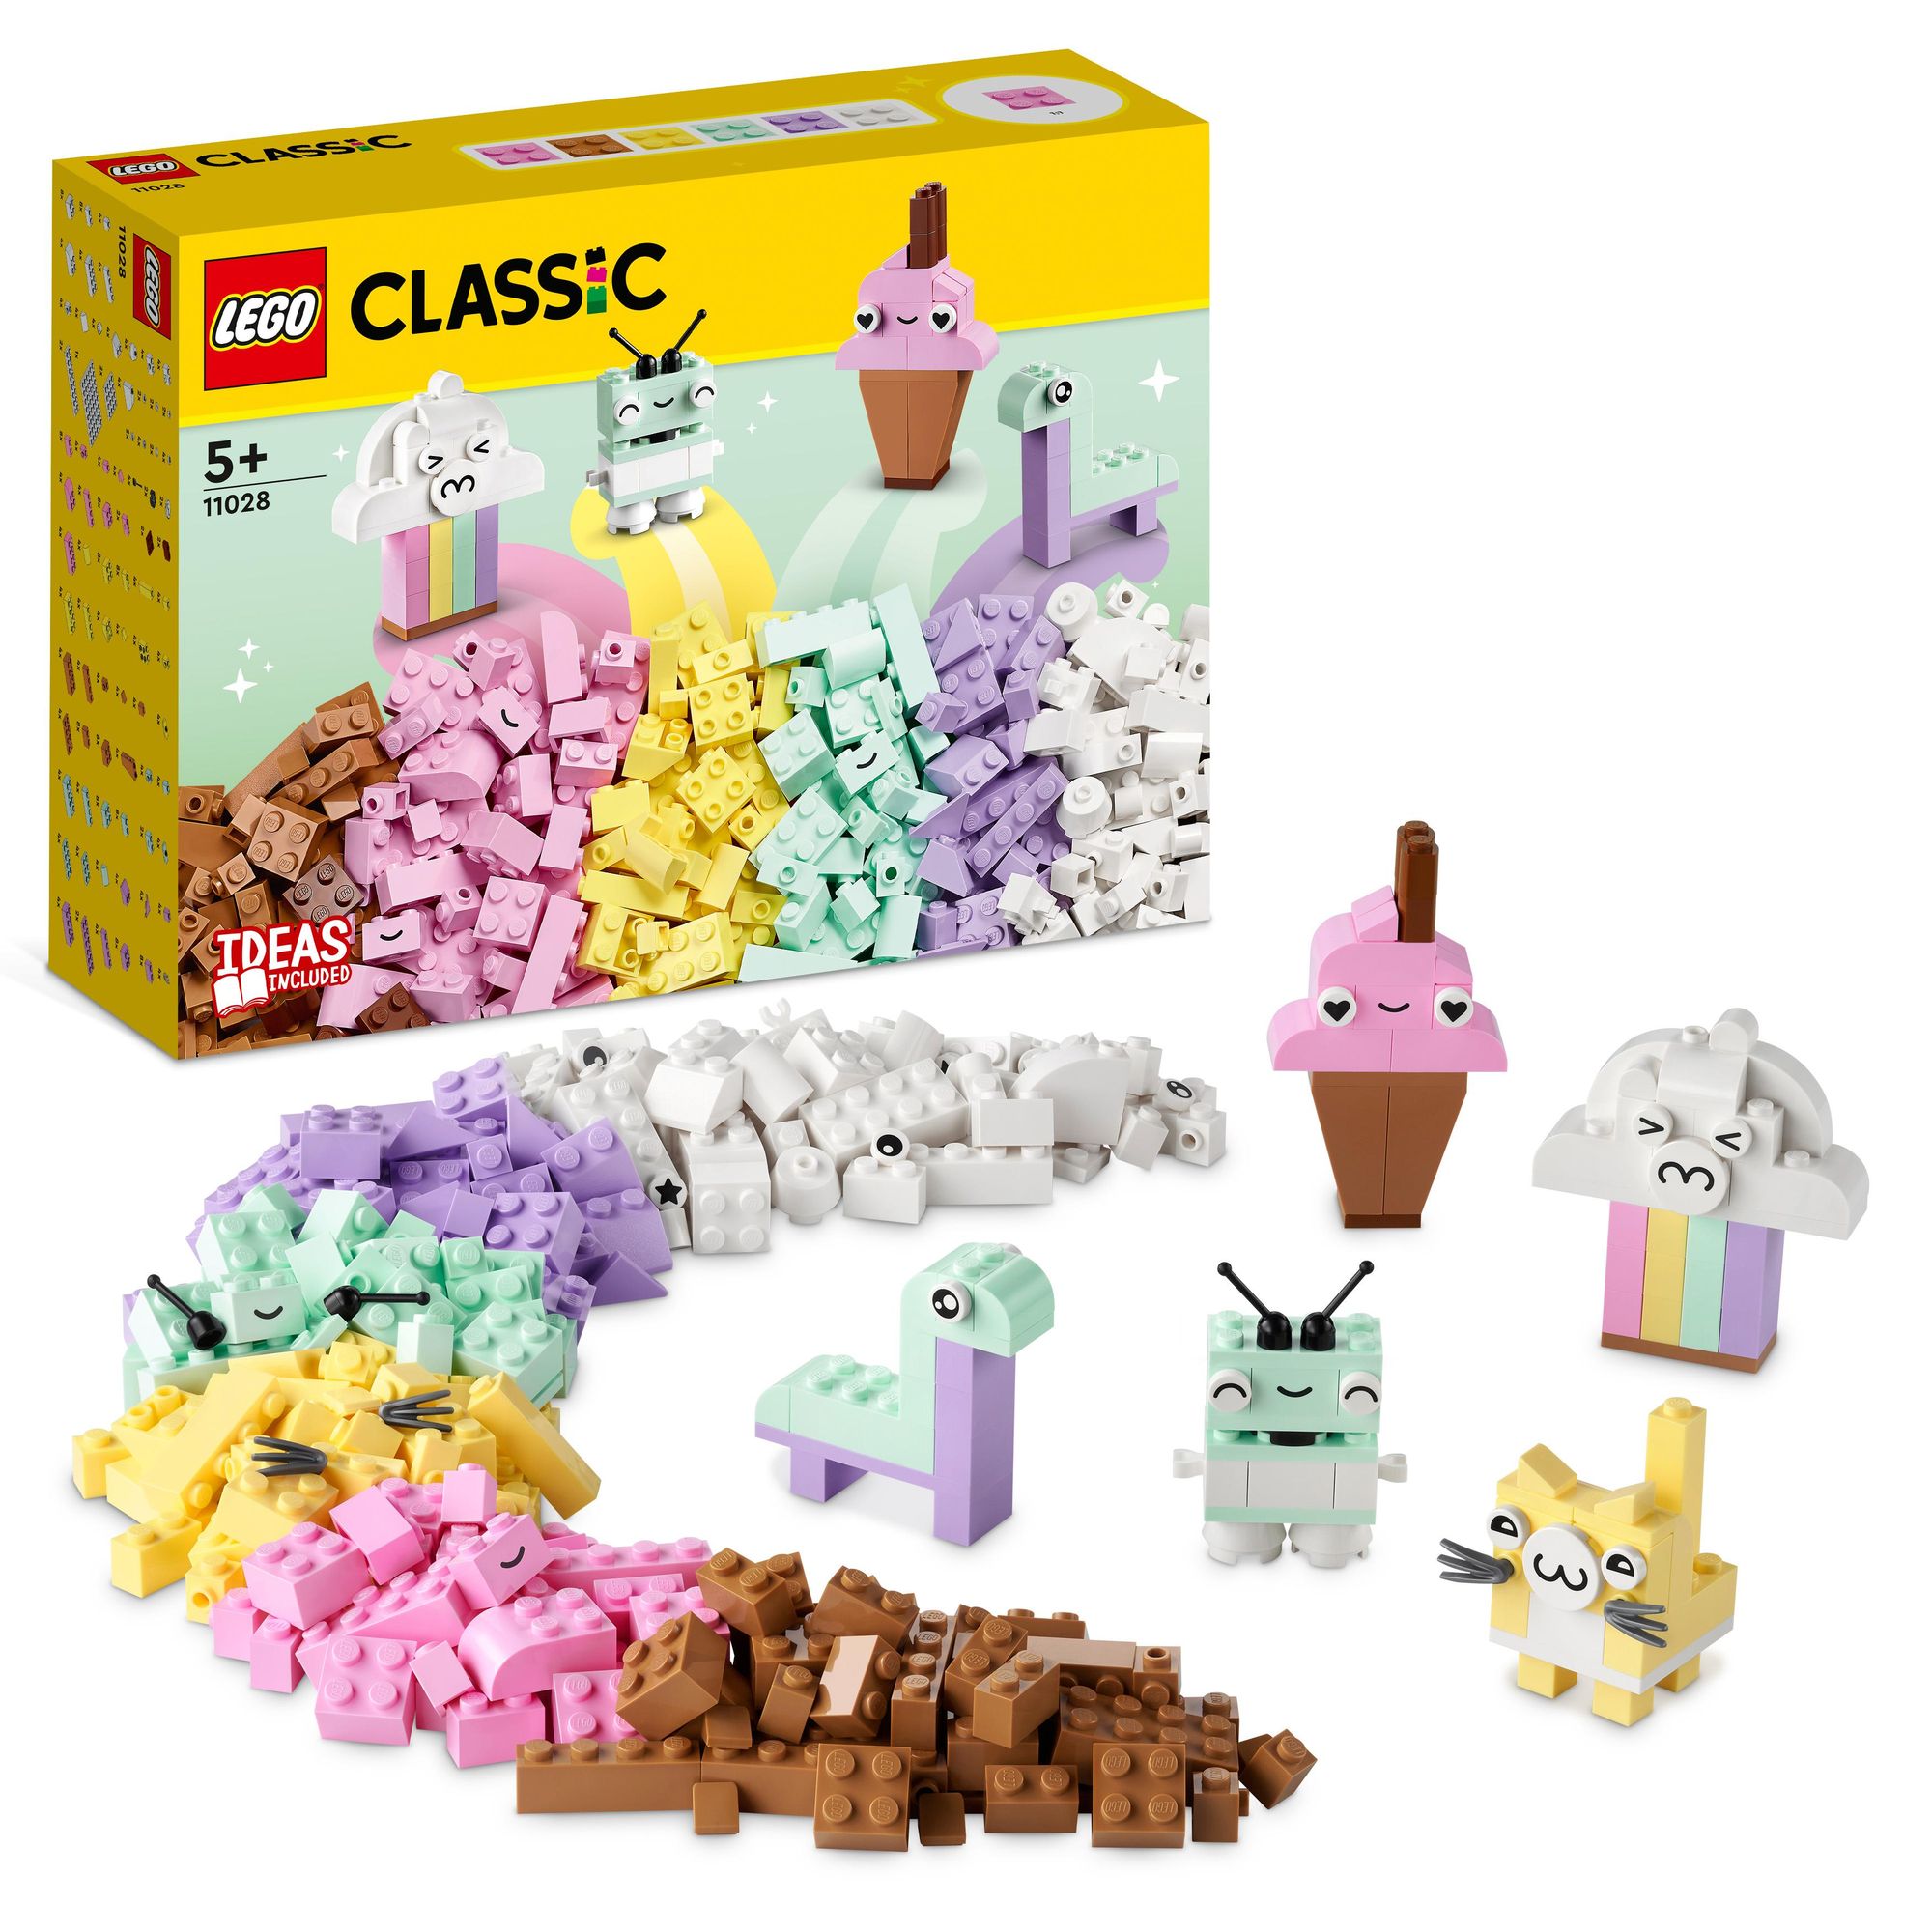 LEGO Classic 11028 Pastell Kreativ-Bauset, Bausteine für Kinder ab 5+'  kaufen - Spielwaren